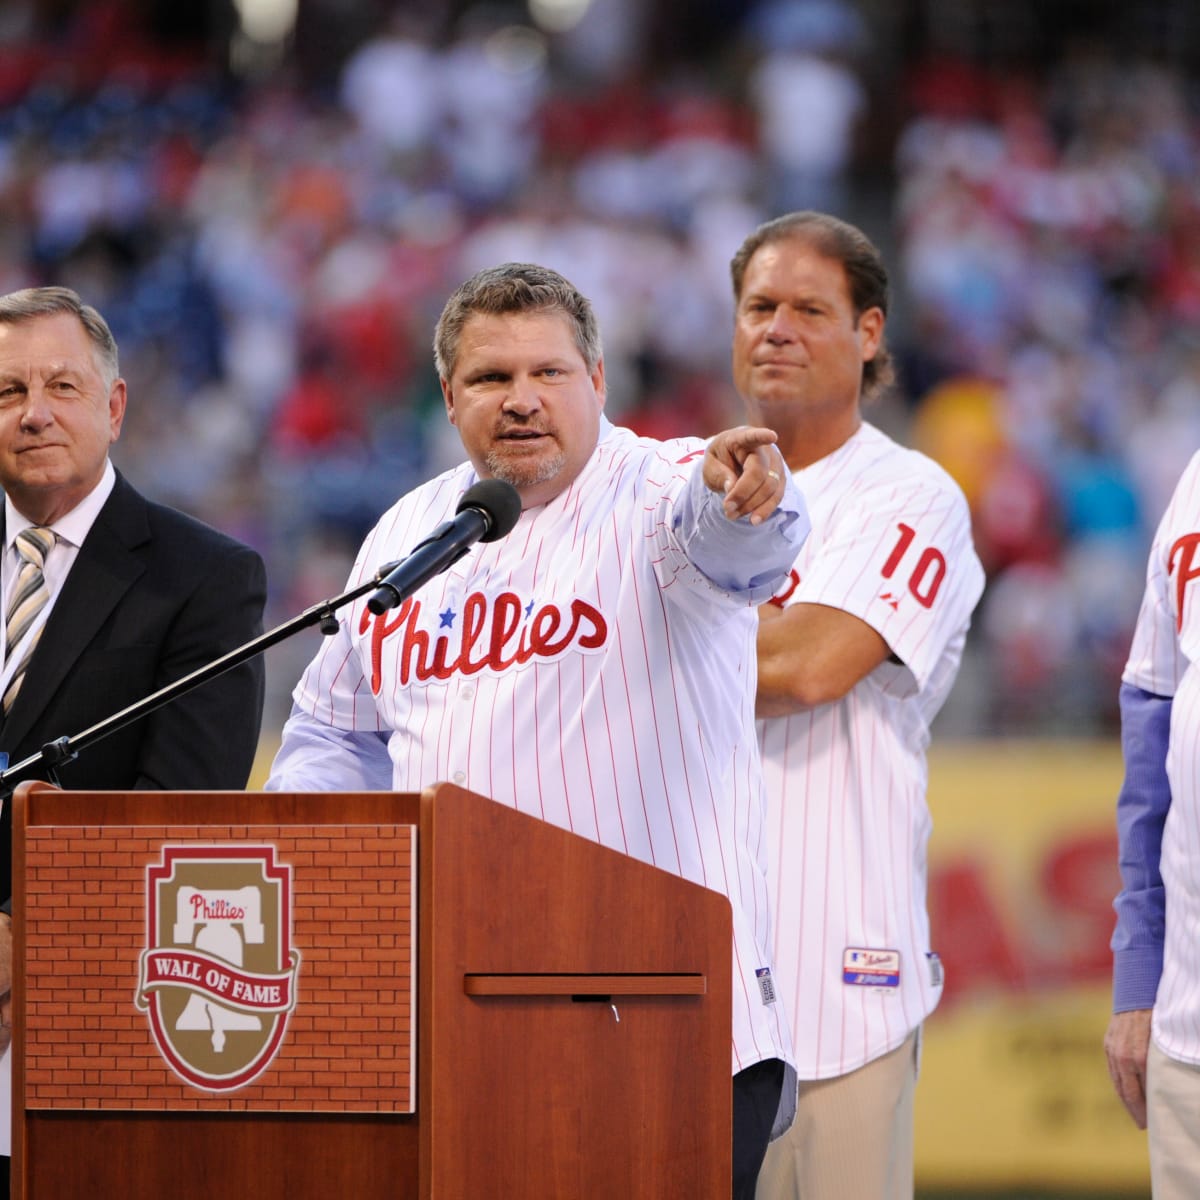 Former MLB all-star John Kruk to speak at Southwest Florida Sports Awards